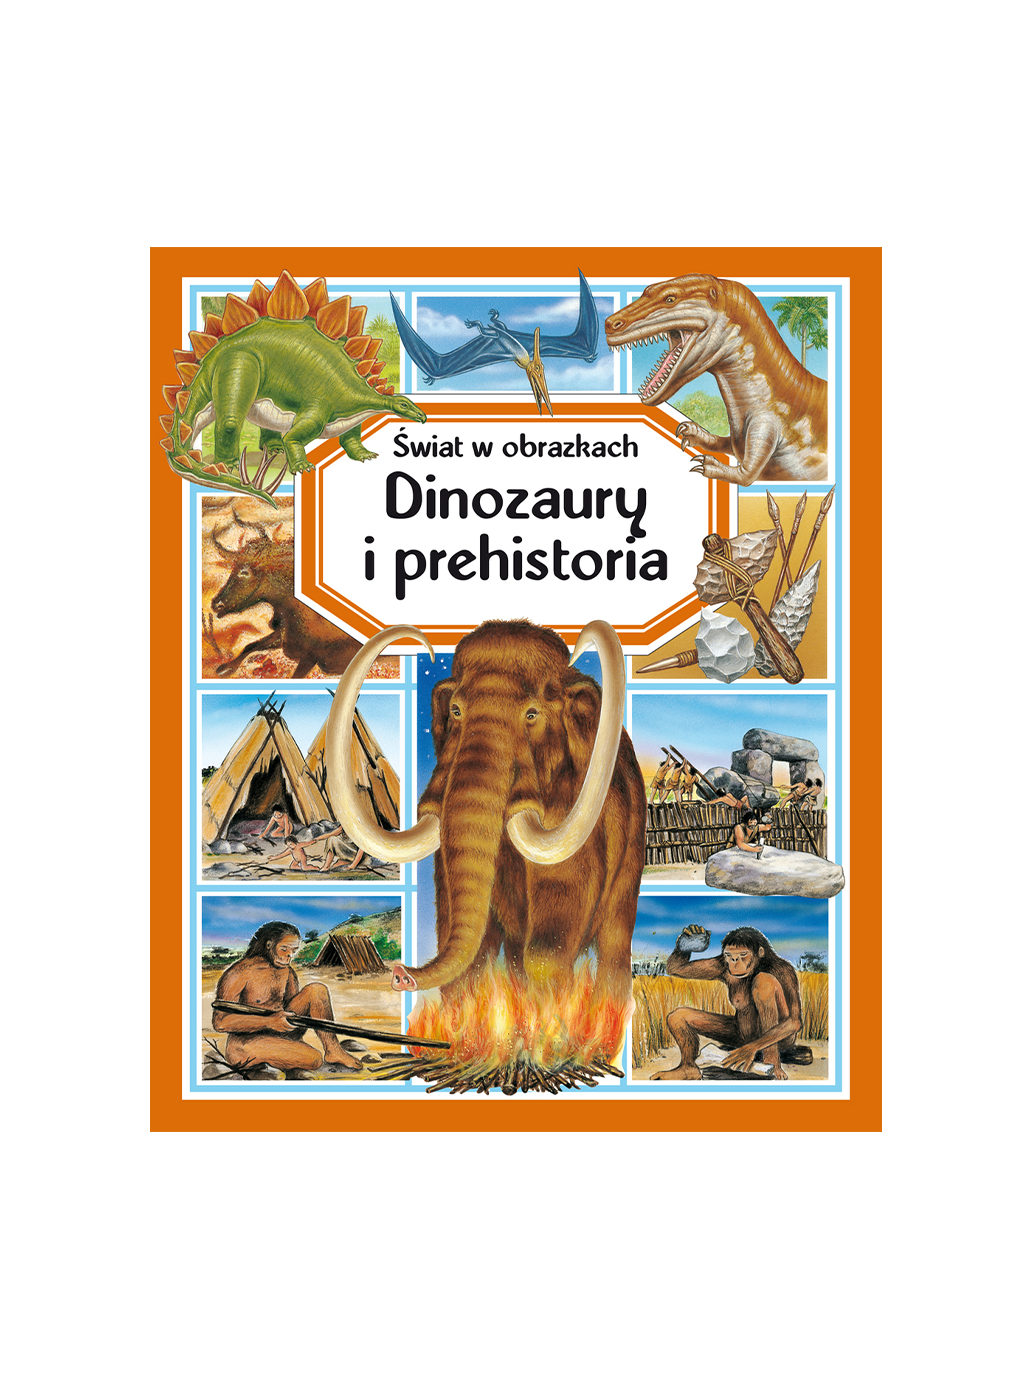 El mundo en imágenes. Dinosaurios y prehistoria